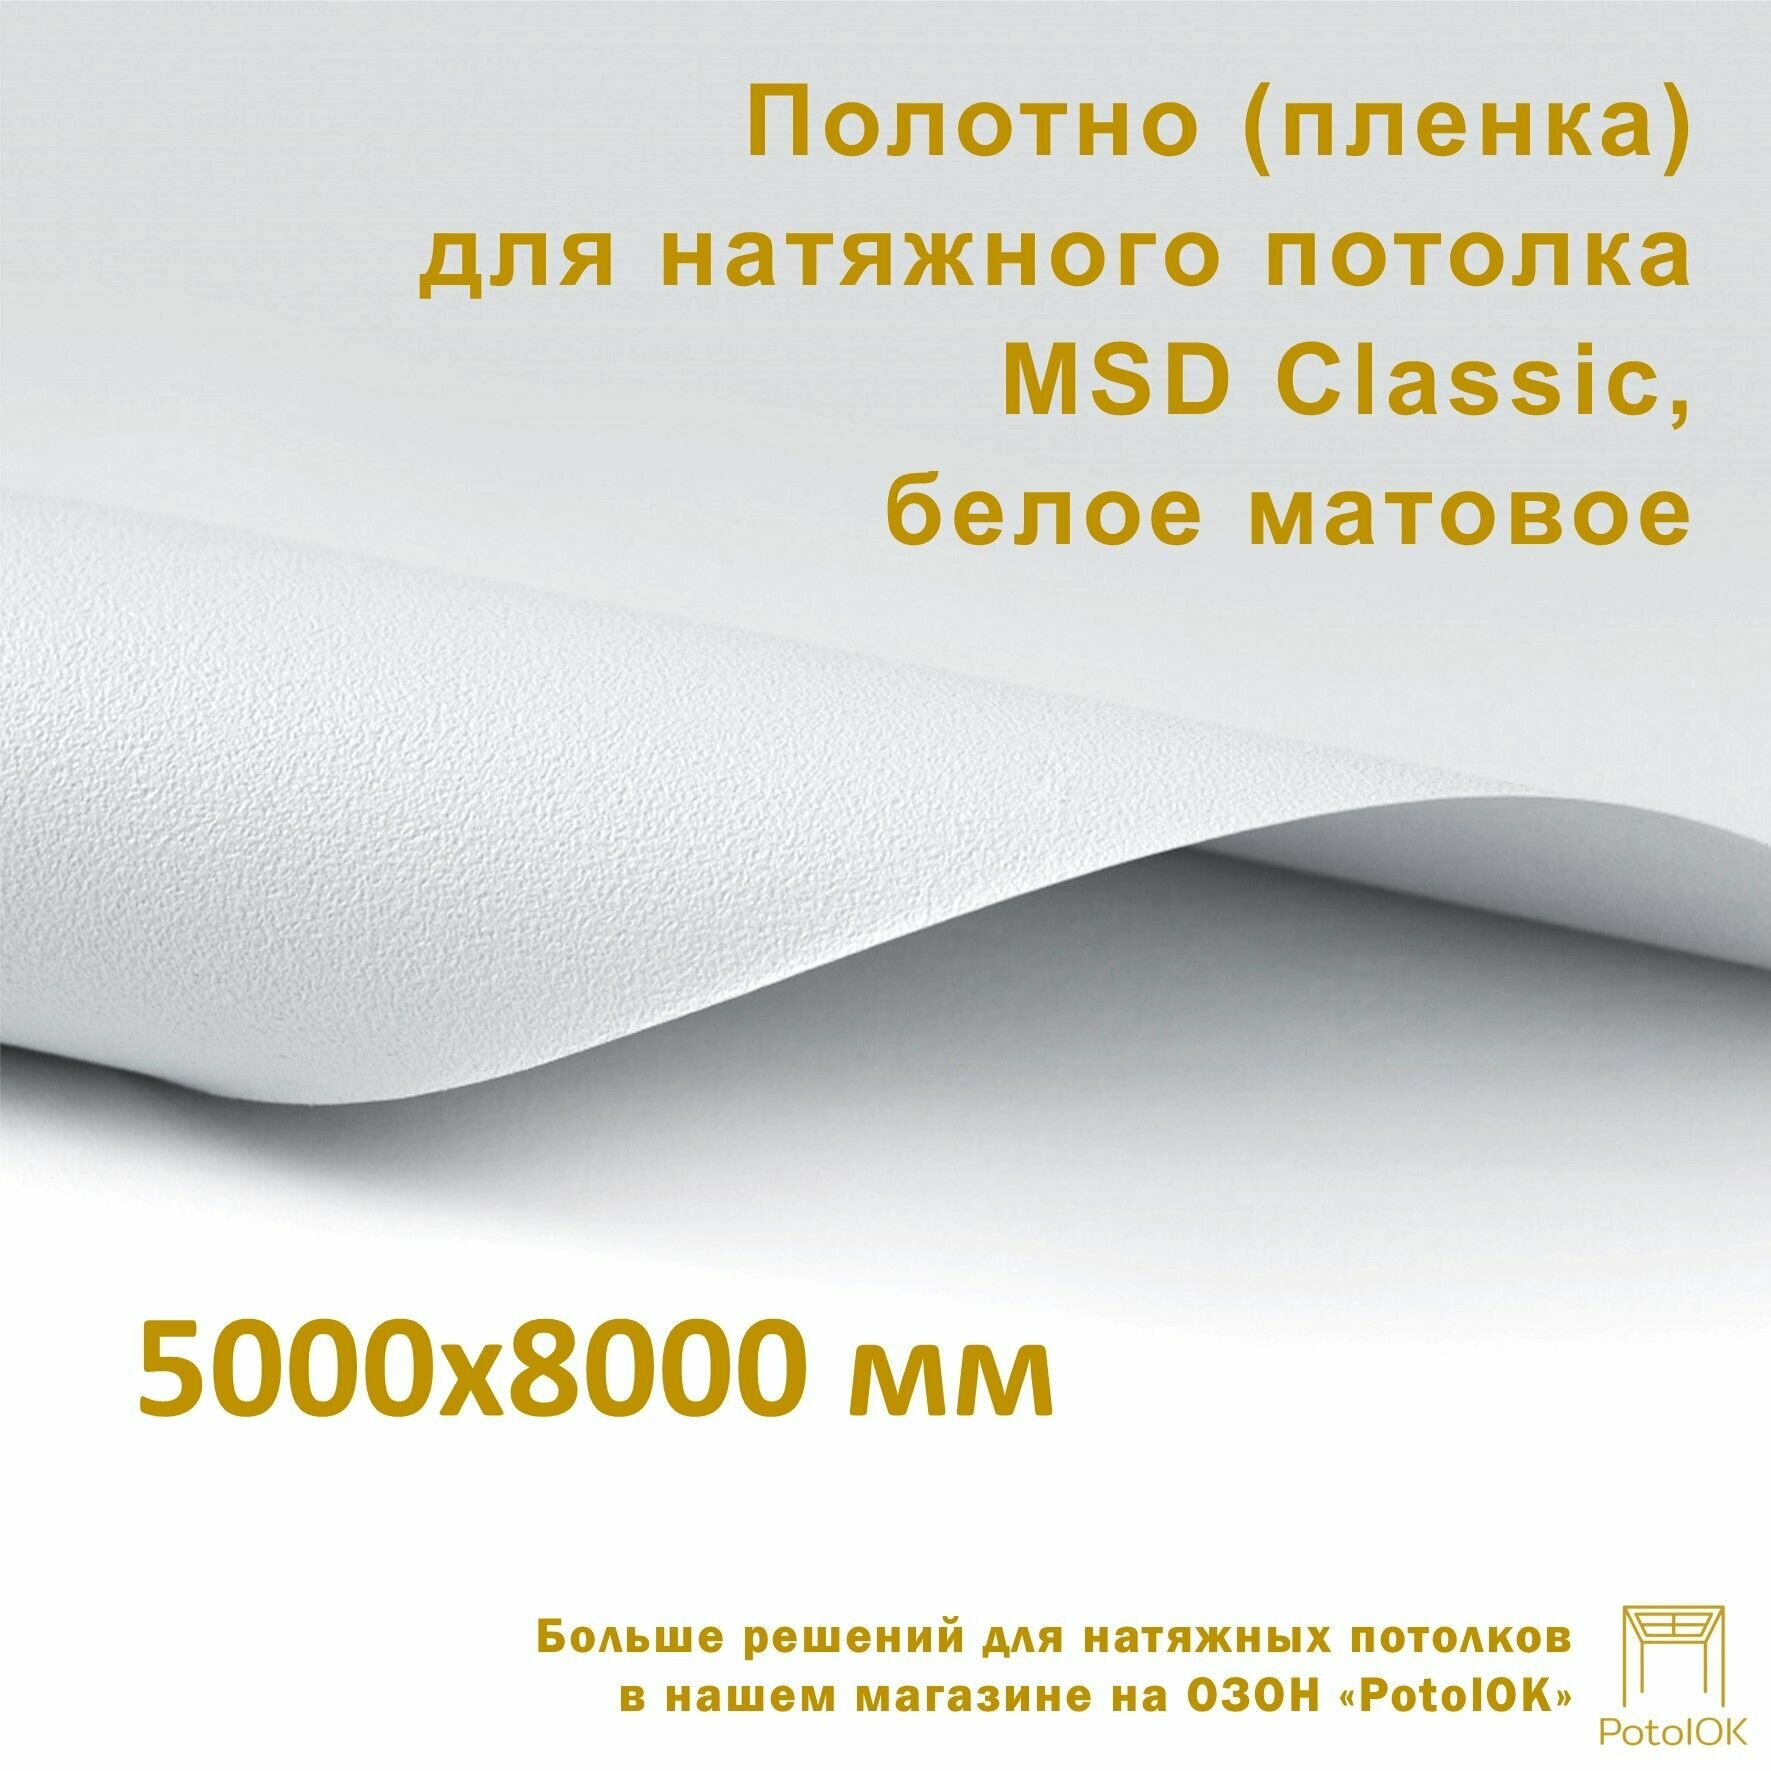 Полотно (пленка) для натяжного потолка MSD CLASSIC, белое матовое, 5000x8000 мм